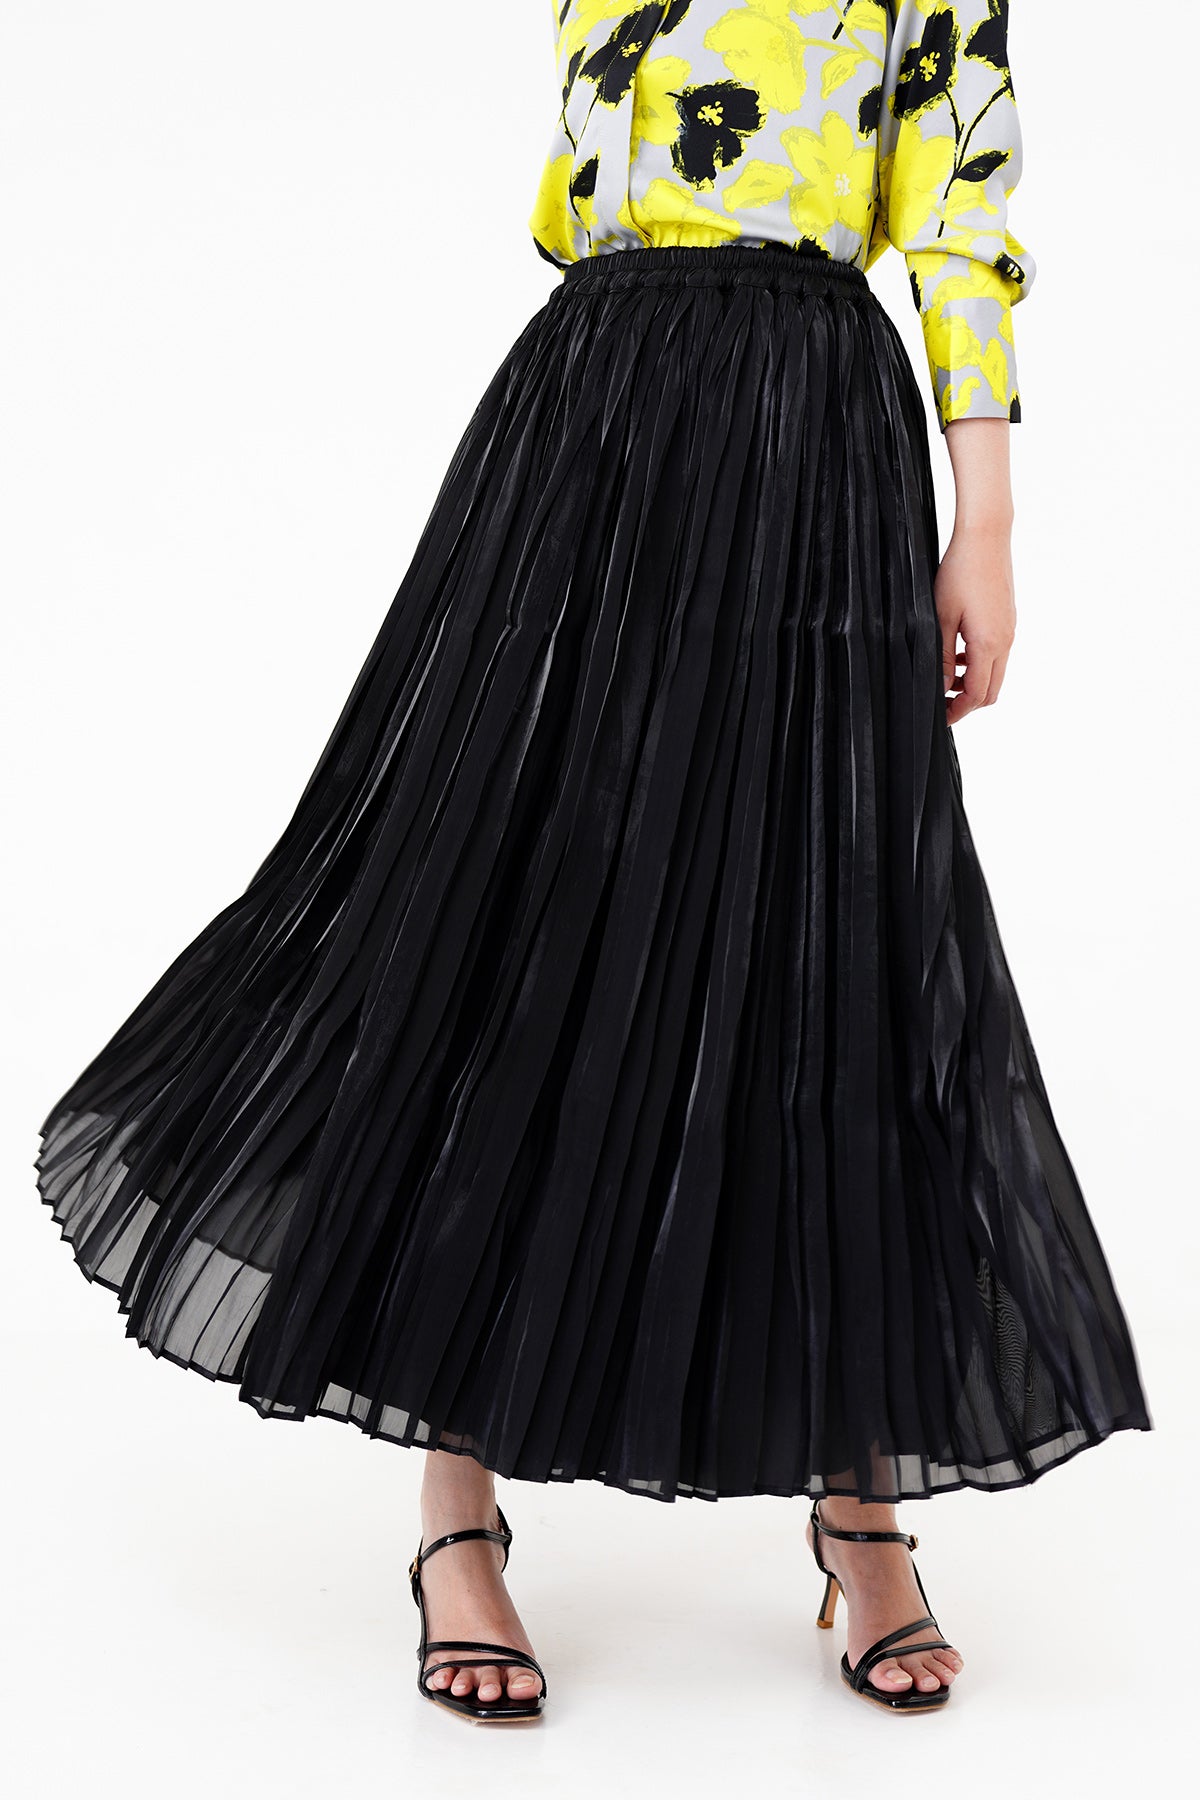 Pleated Skirt - Black